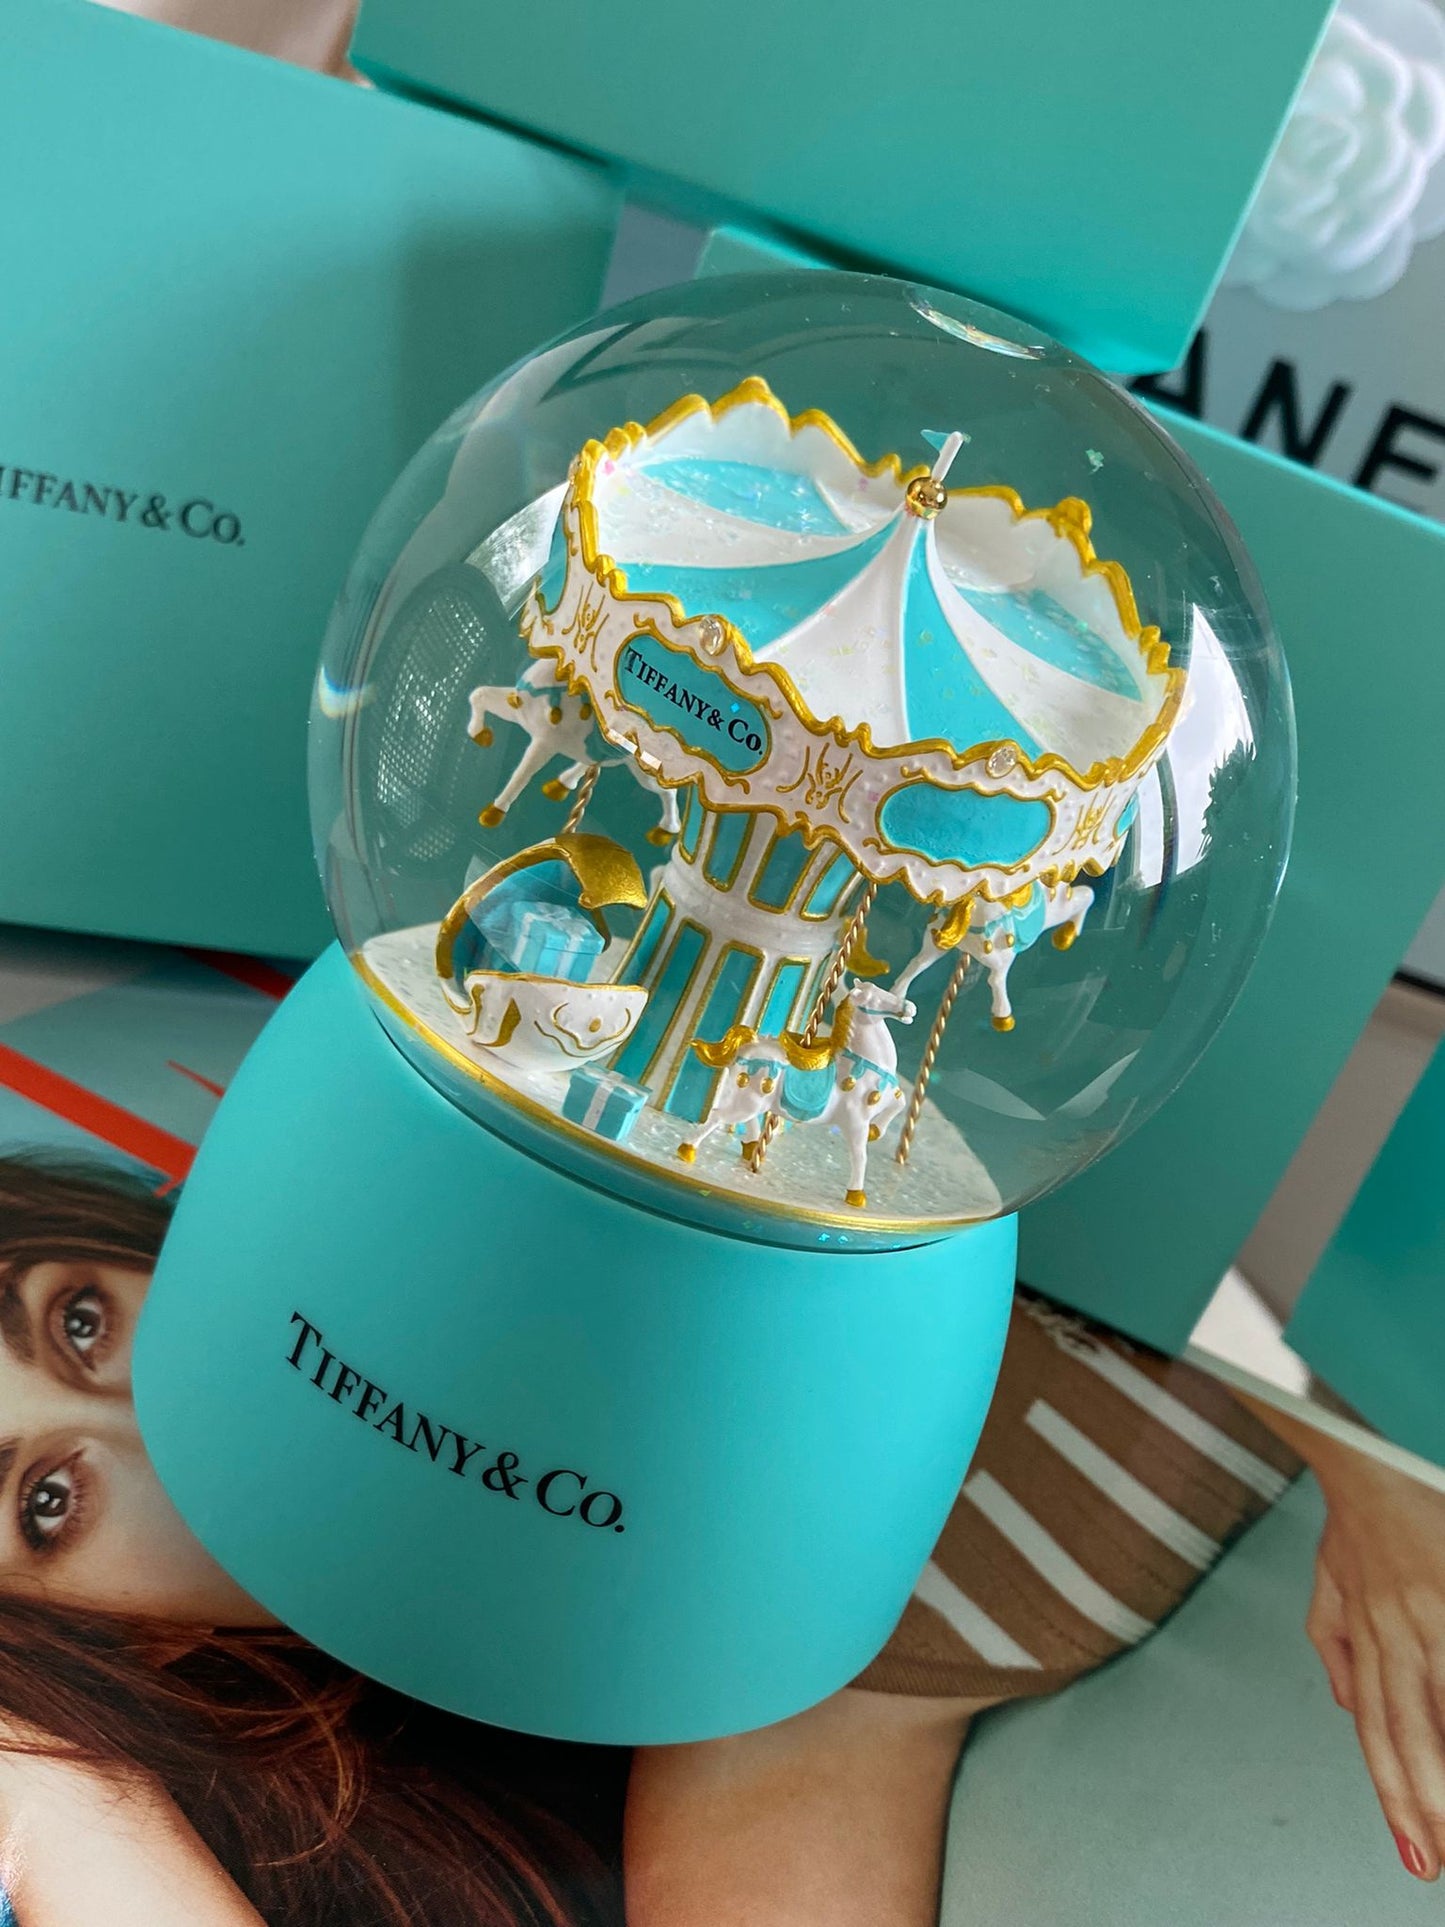 T & Co Stunning Carousel Musical Globe Gift